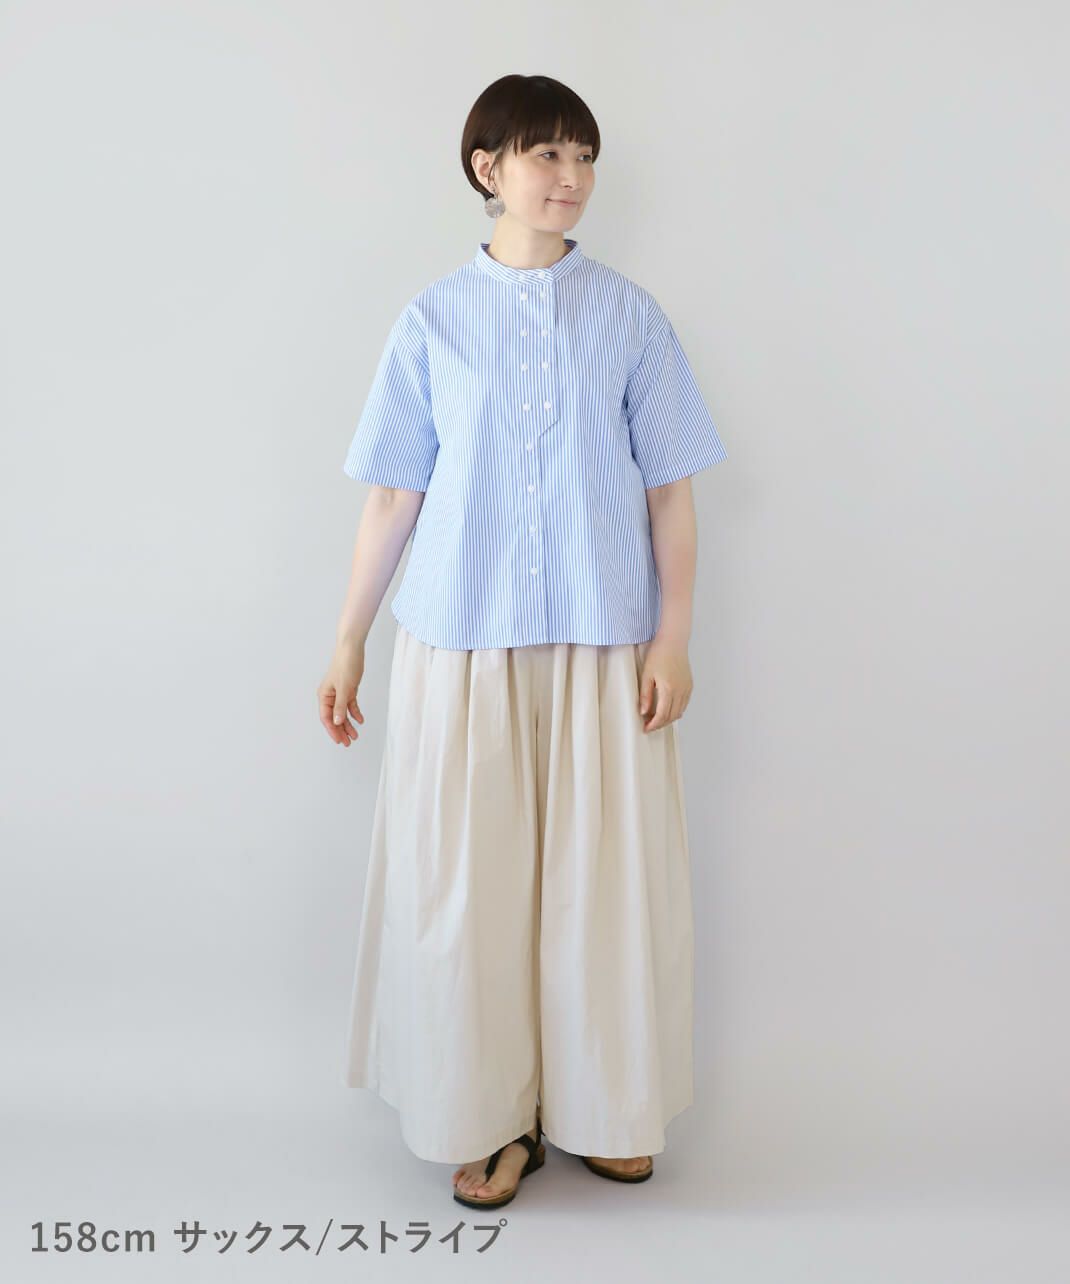 mumokuteki秘密のダブルボタン半袖シャツ サックス/ストライプ 着画